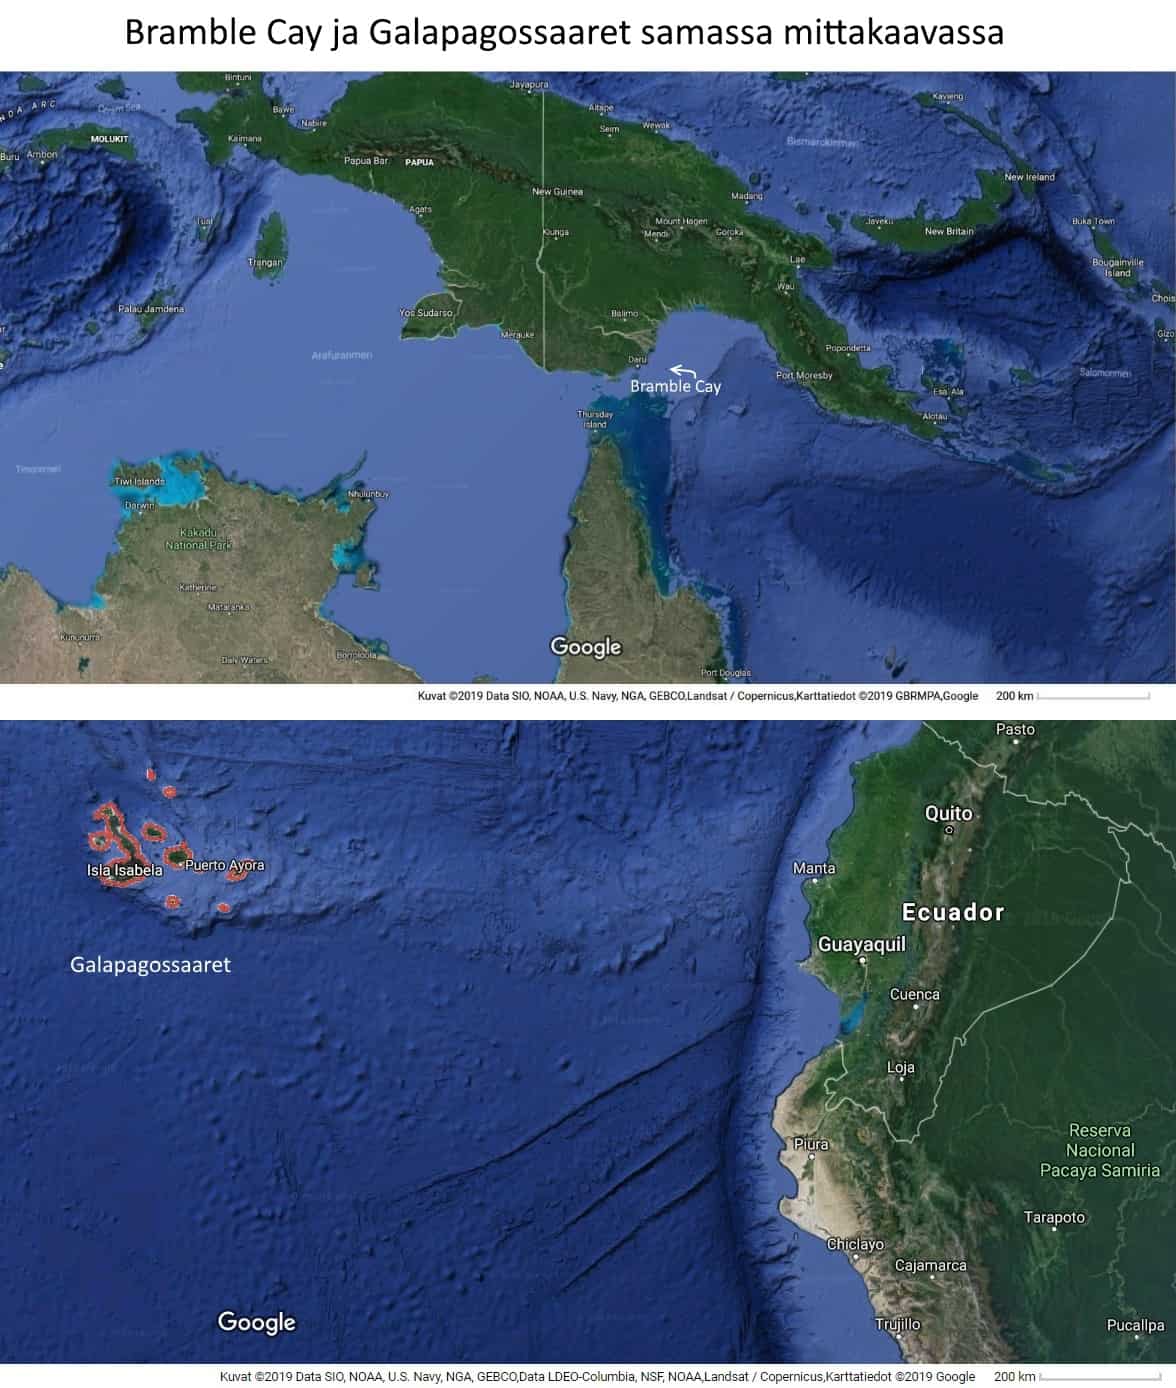 Bramble Cay ja Galapagossaaret samassa mittakaavassa. Bramble Cay On niin pieni, ettei sitä kartassa edes näy, mutta näemme sen sijaitsevan suorastaan Uuden Guinean kainalossa.